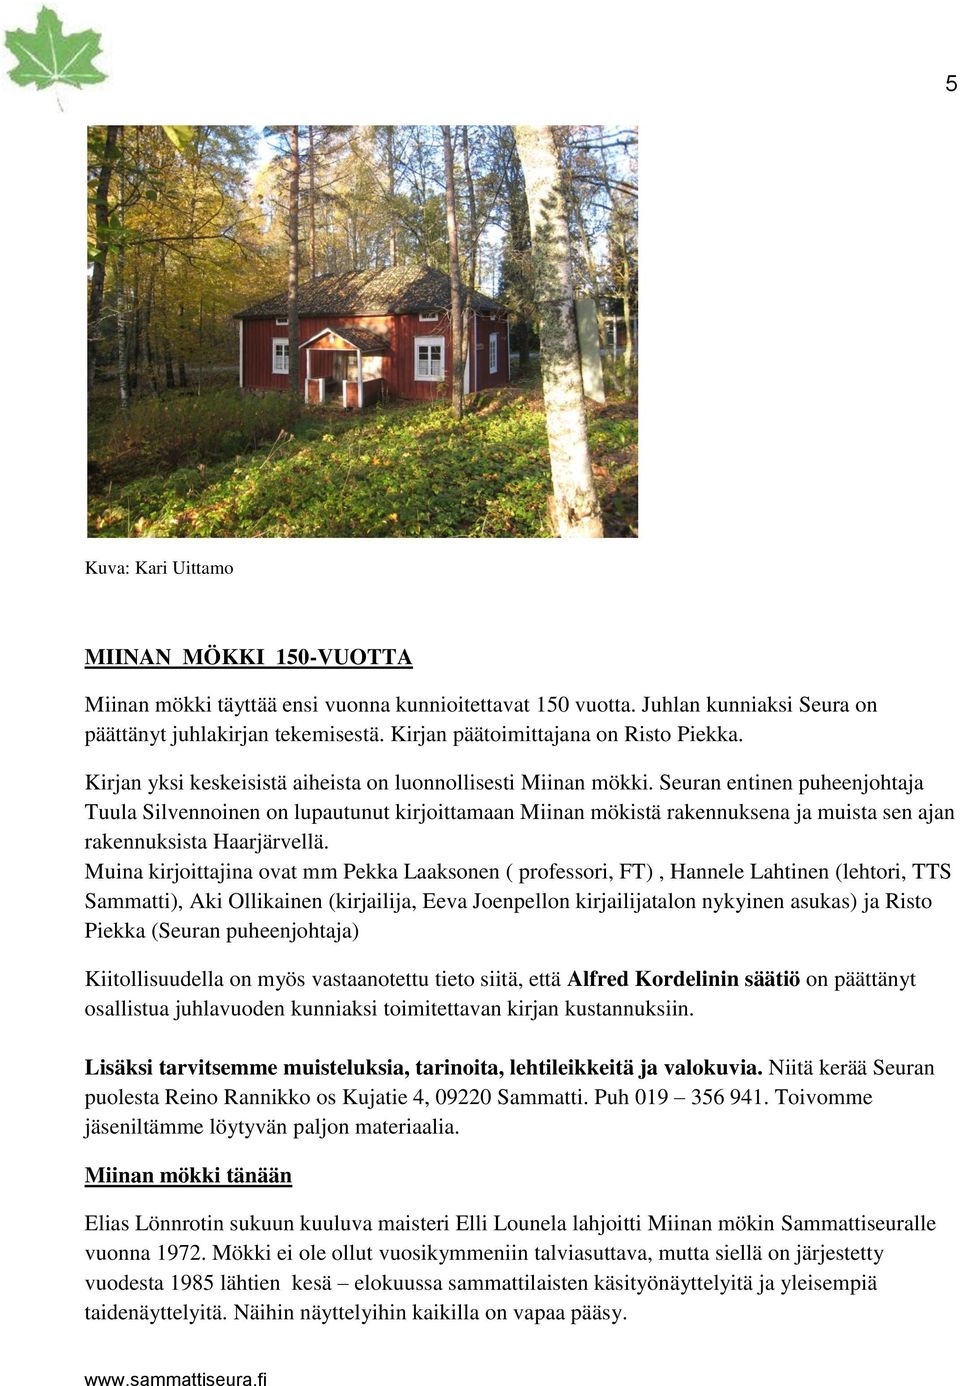 Seuran entinen puheenjohtaja Tuula Silvennoinen on lupautunut kirjoittamaan Miinan mökistä rakennuksena ja muista sen ajan rakennuksista Haarjärvellä.